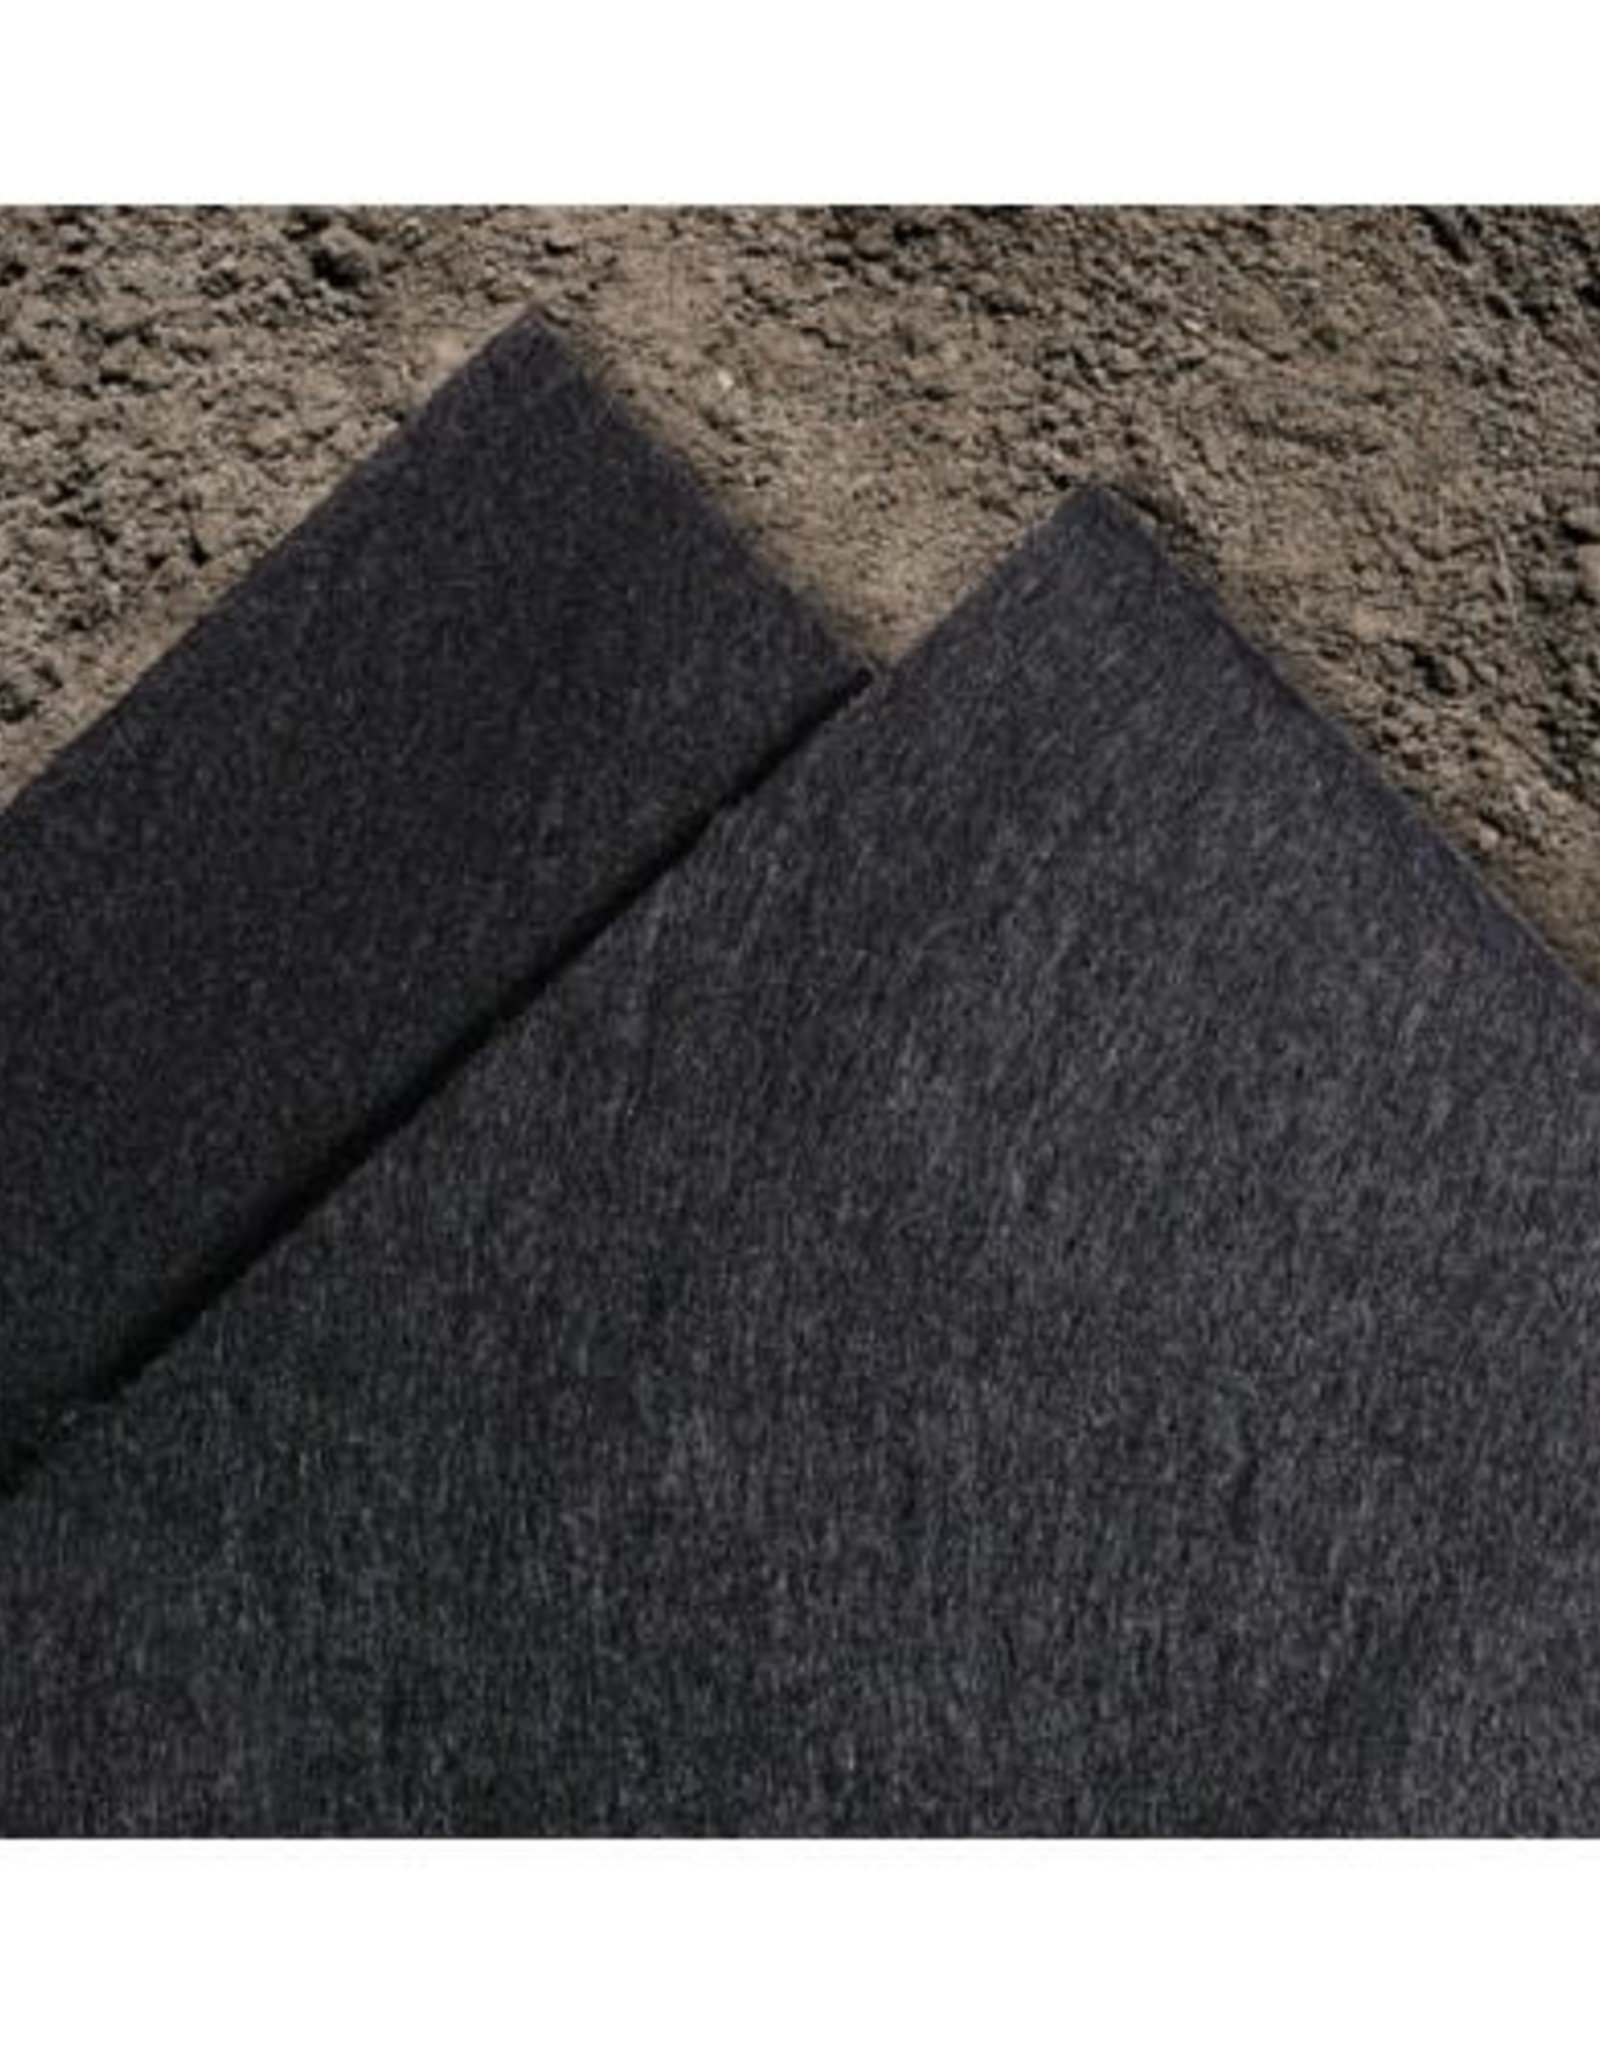 6oz Non-Woven Geotextile Fabric – RutGuard